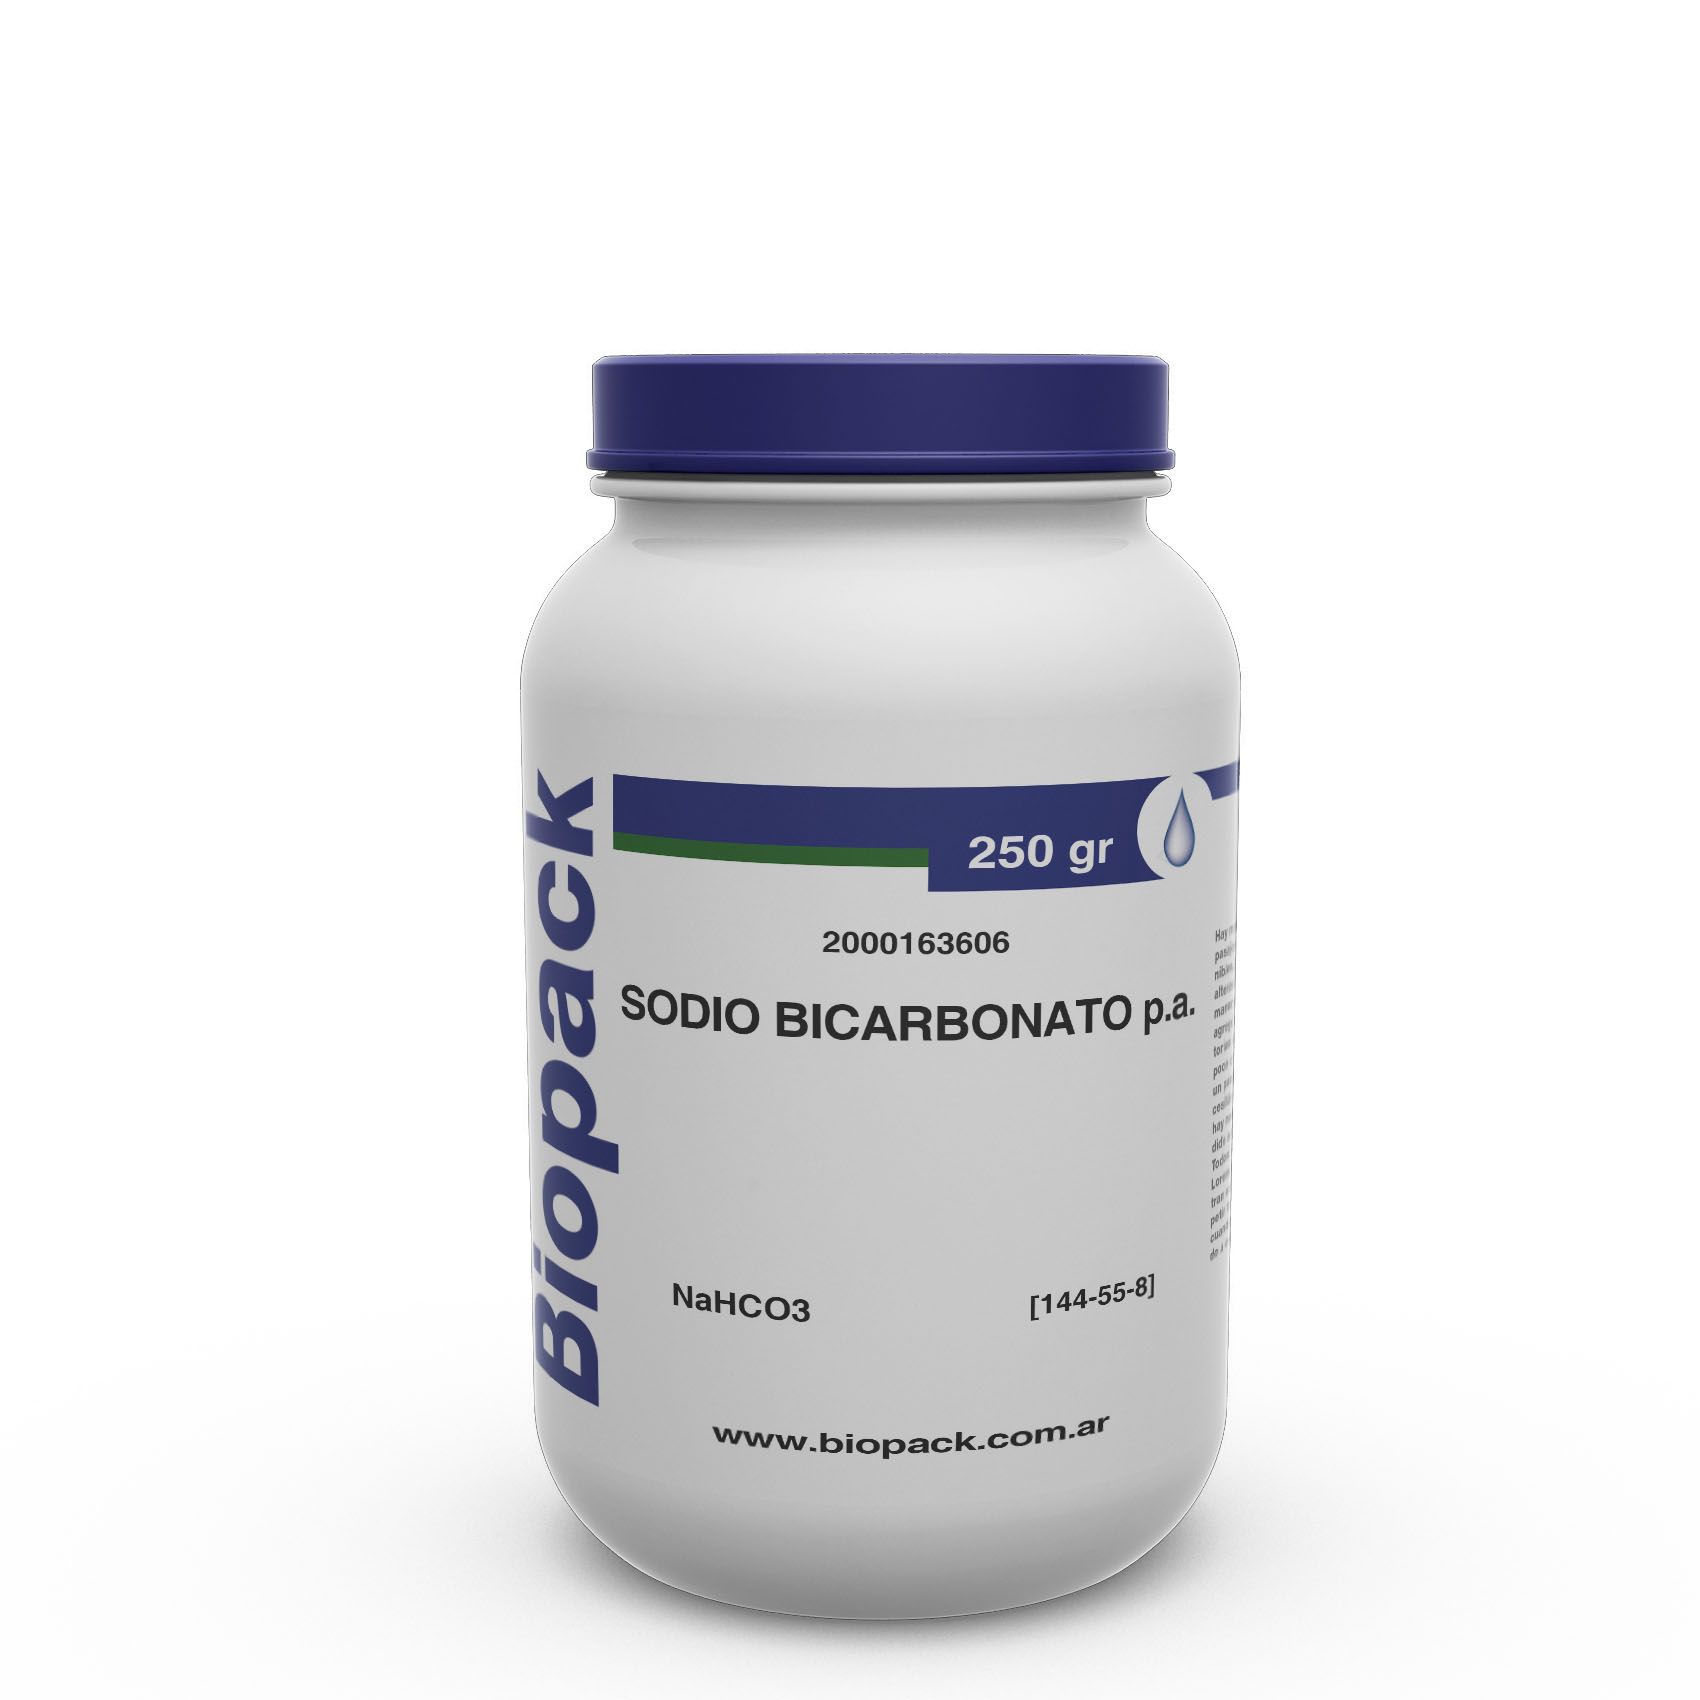 SODIO BICARBONATO P.A. x 250 g | BIOPACK